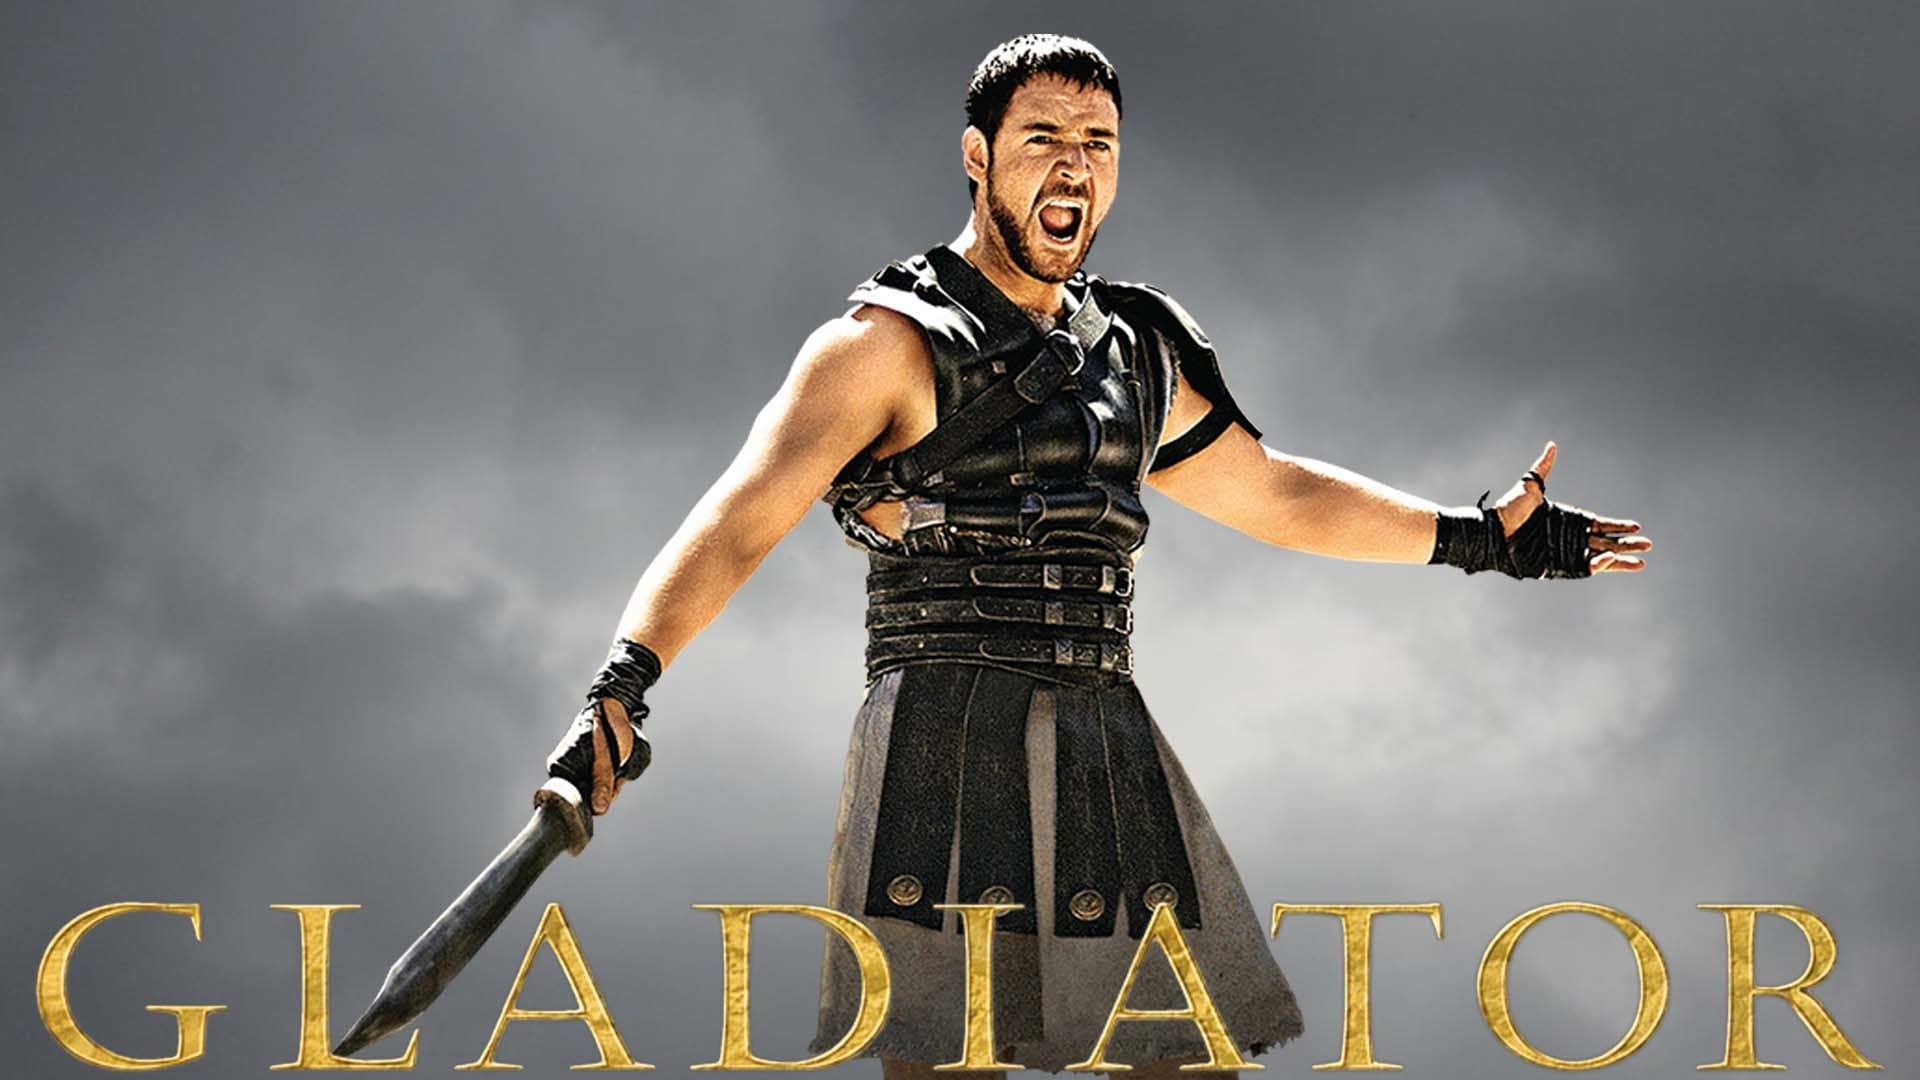 Il gladiatore (2000)